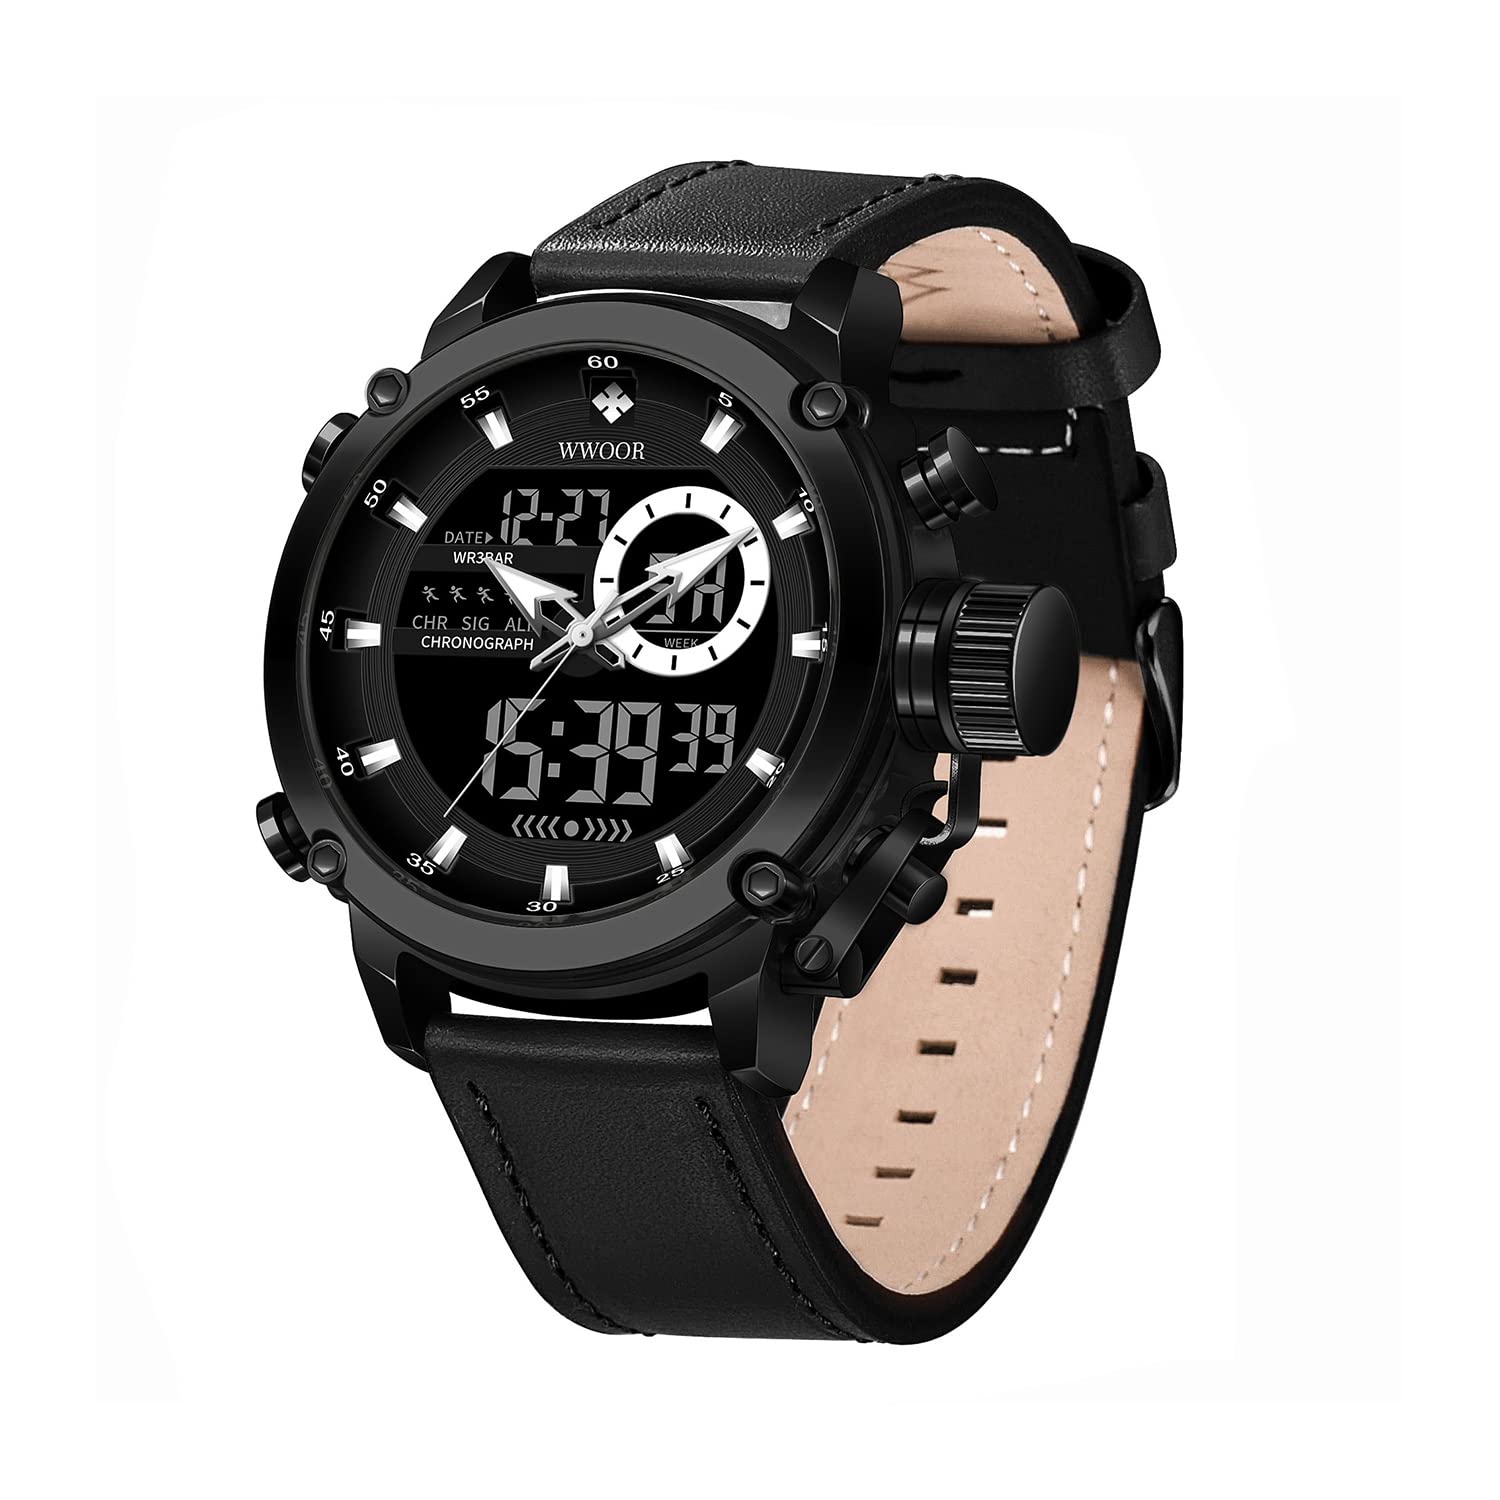 WWOOR Men's Watches Sports Outdoor Waterproof Military Watch Date Multi Function Tactics LED Watch for Men，Alarm Stopwatch